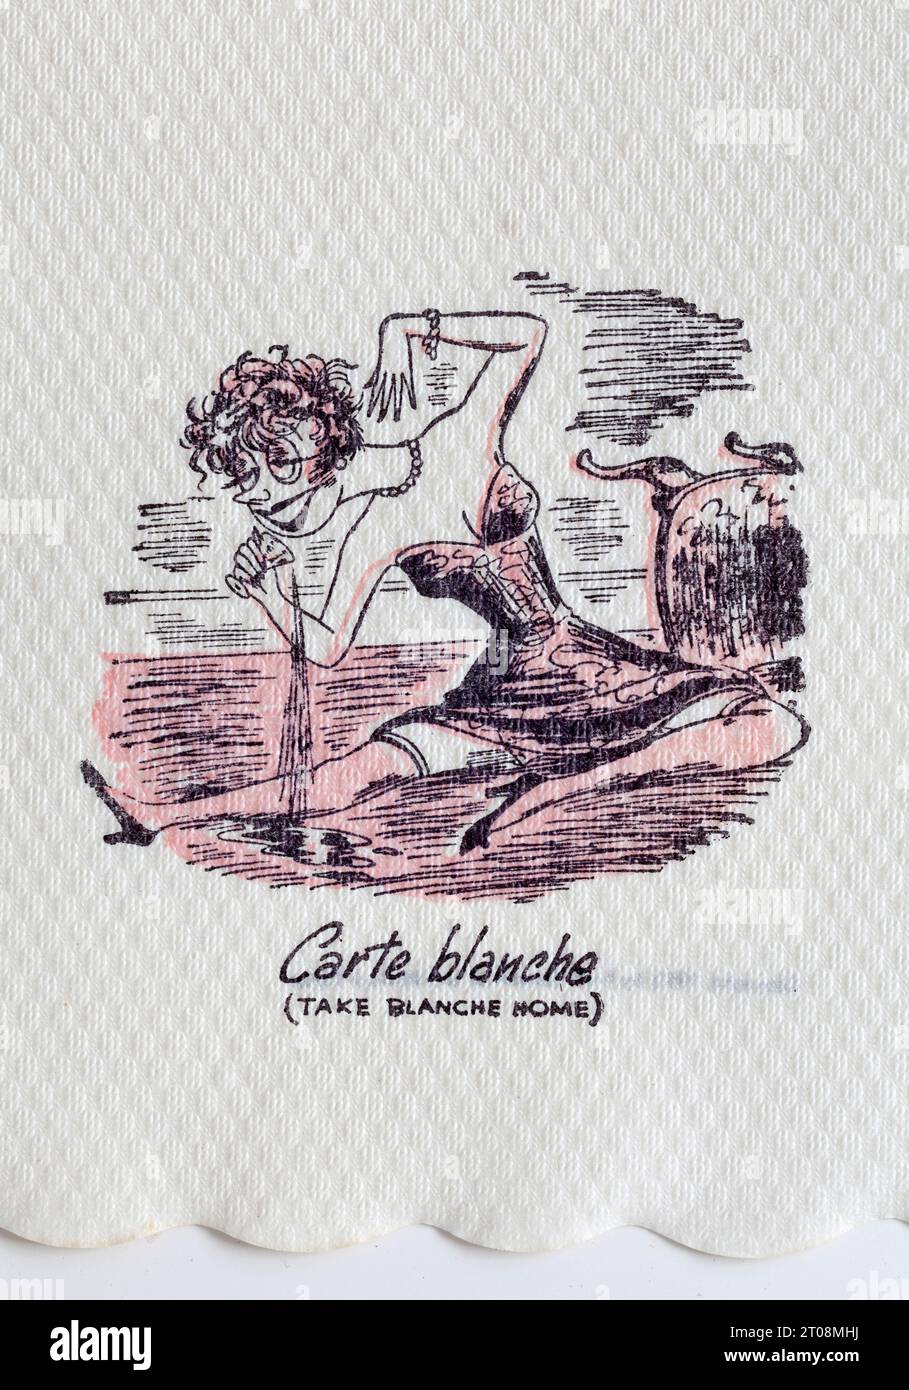 Serviette Cartoon des années 1950 - plaisanterie en français - carte Balnche - Take Blanche Home Banque D'Images